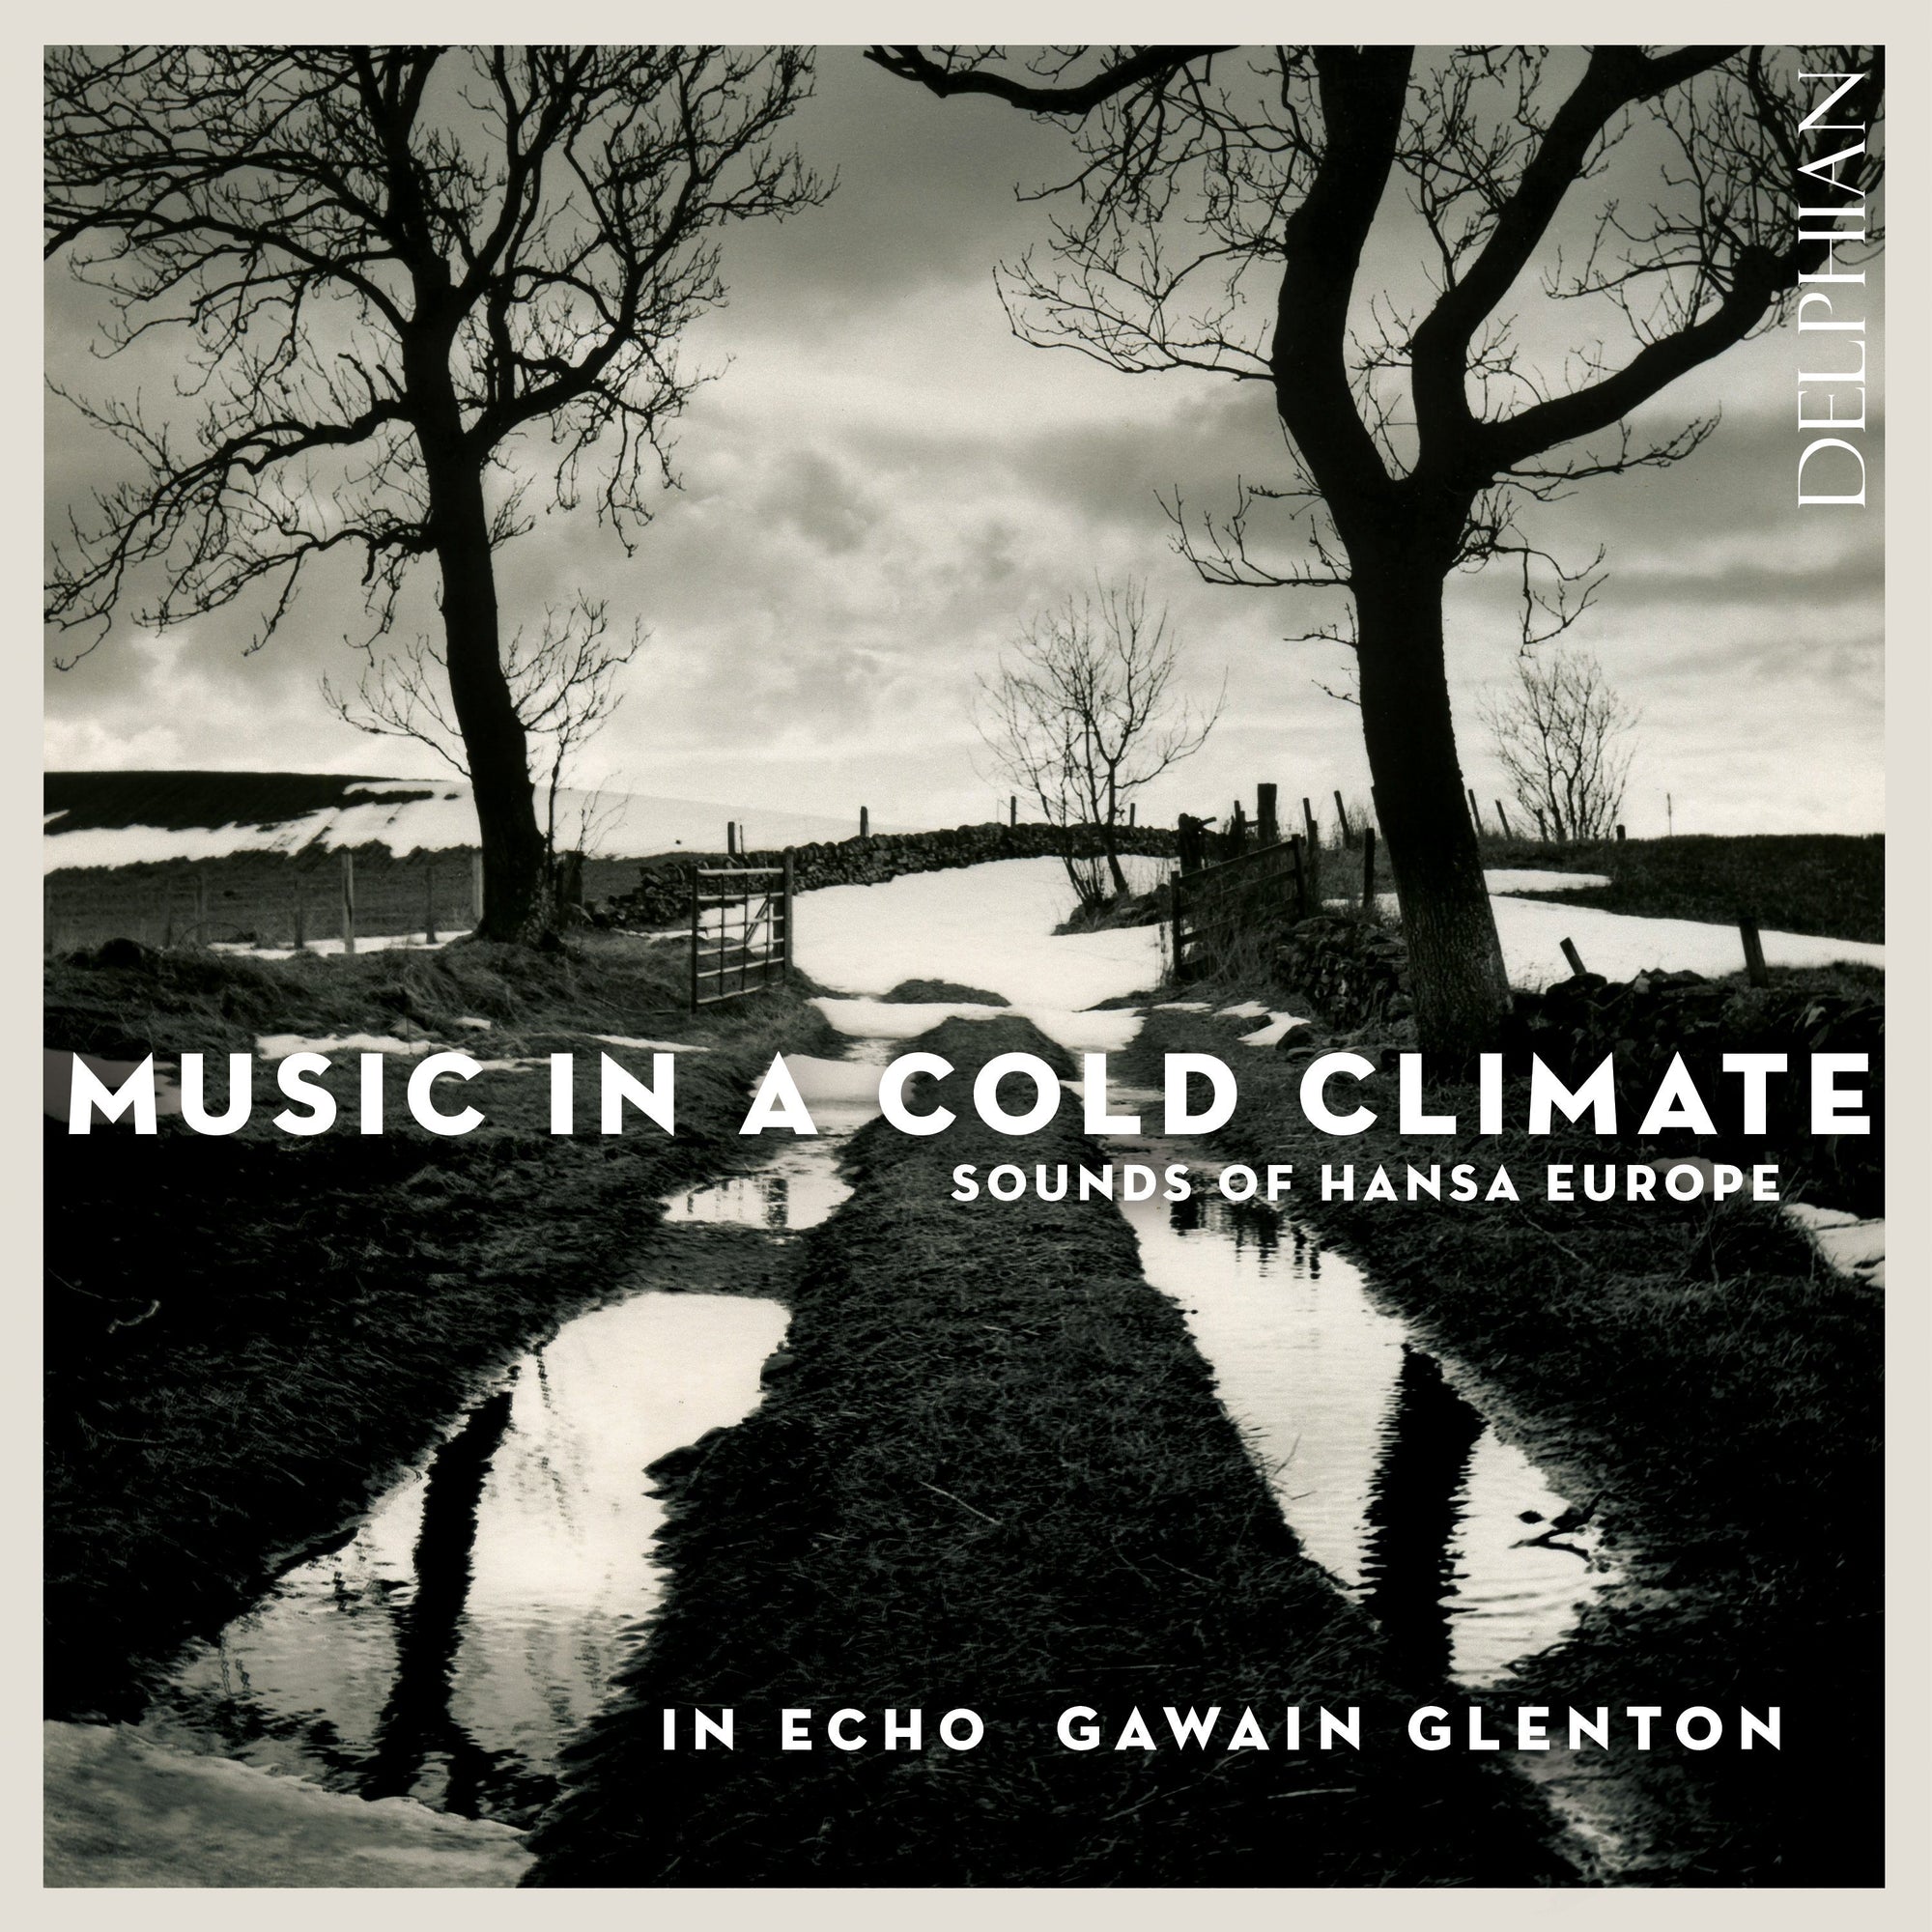 Music in a Cold Climate CD Delphian Records